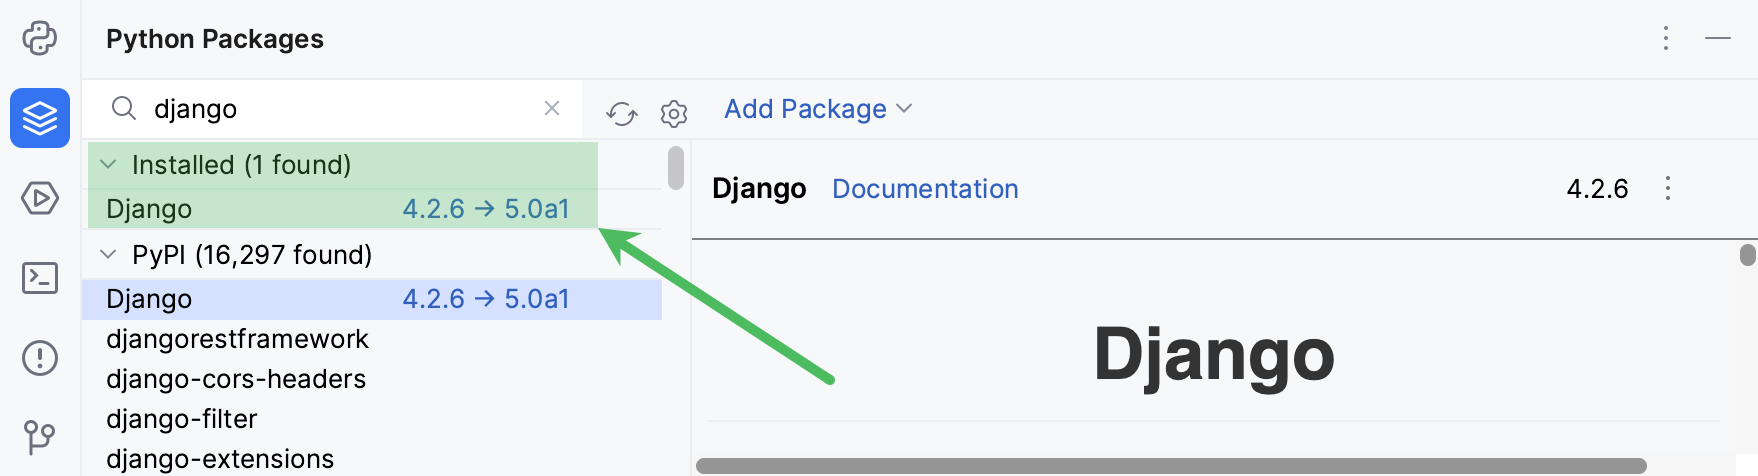 Django package is added